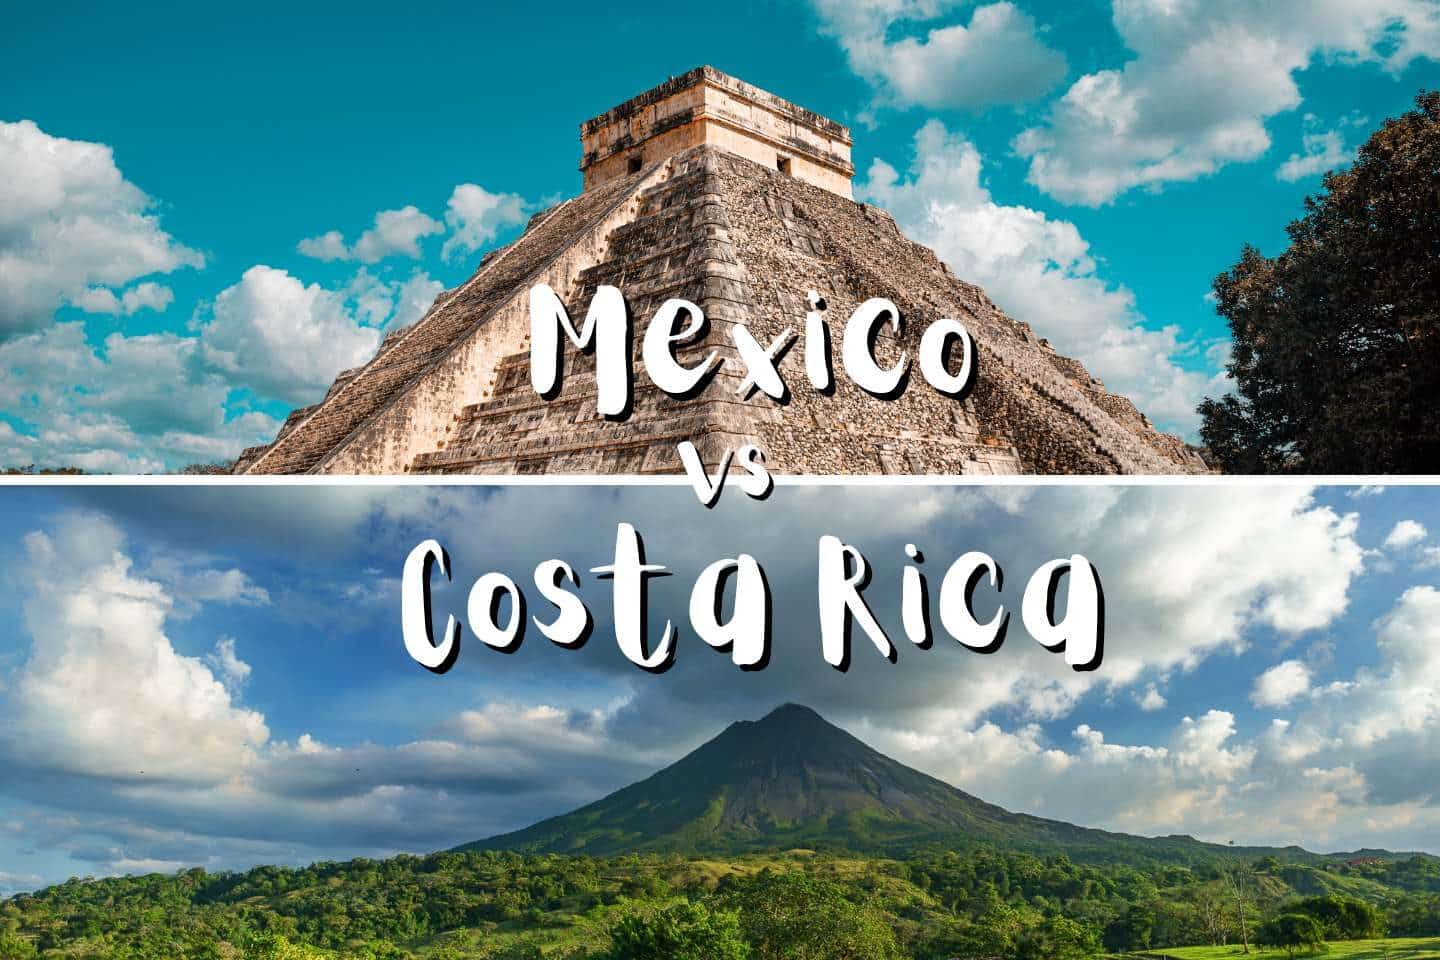 Mexico vs Costa Rica: A Comparison Guide